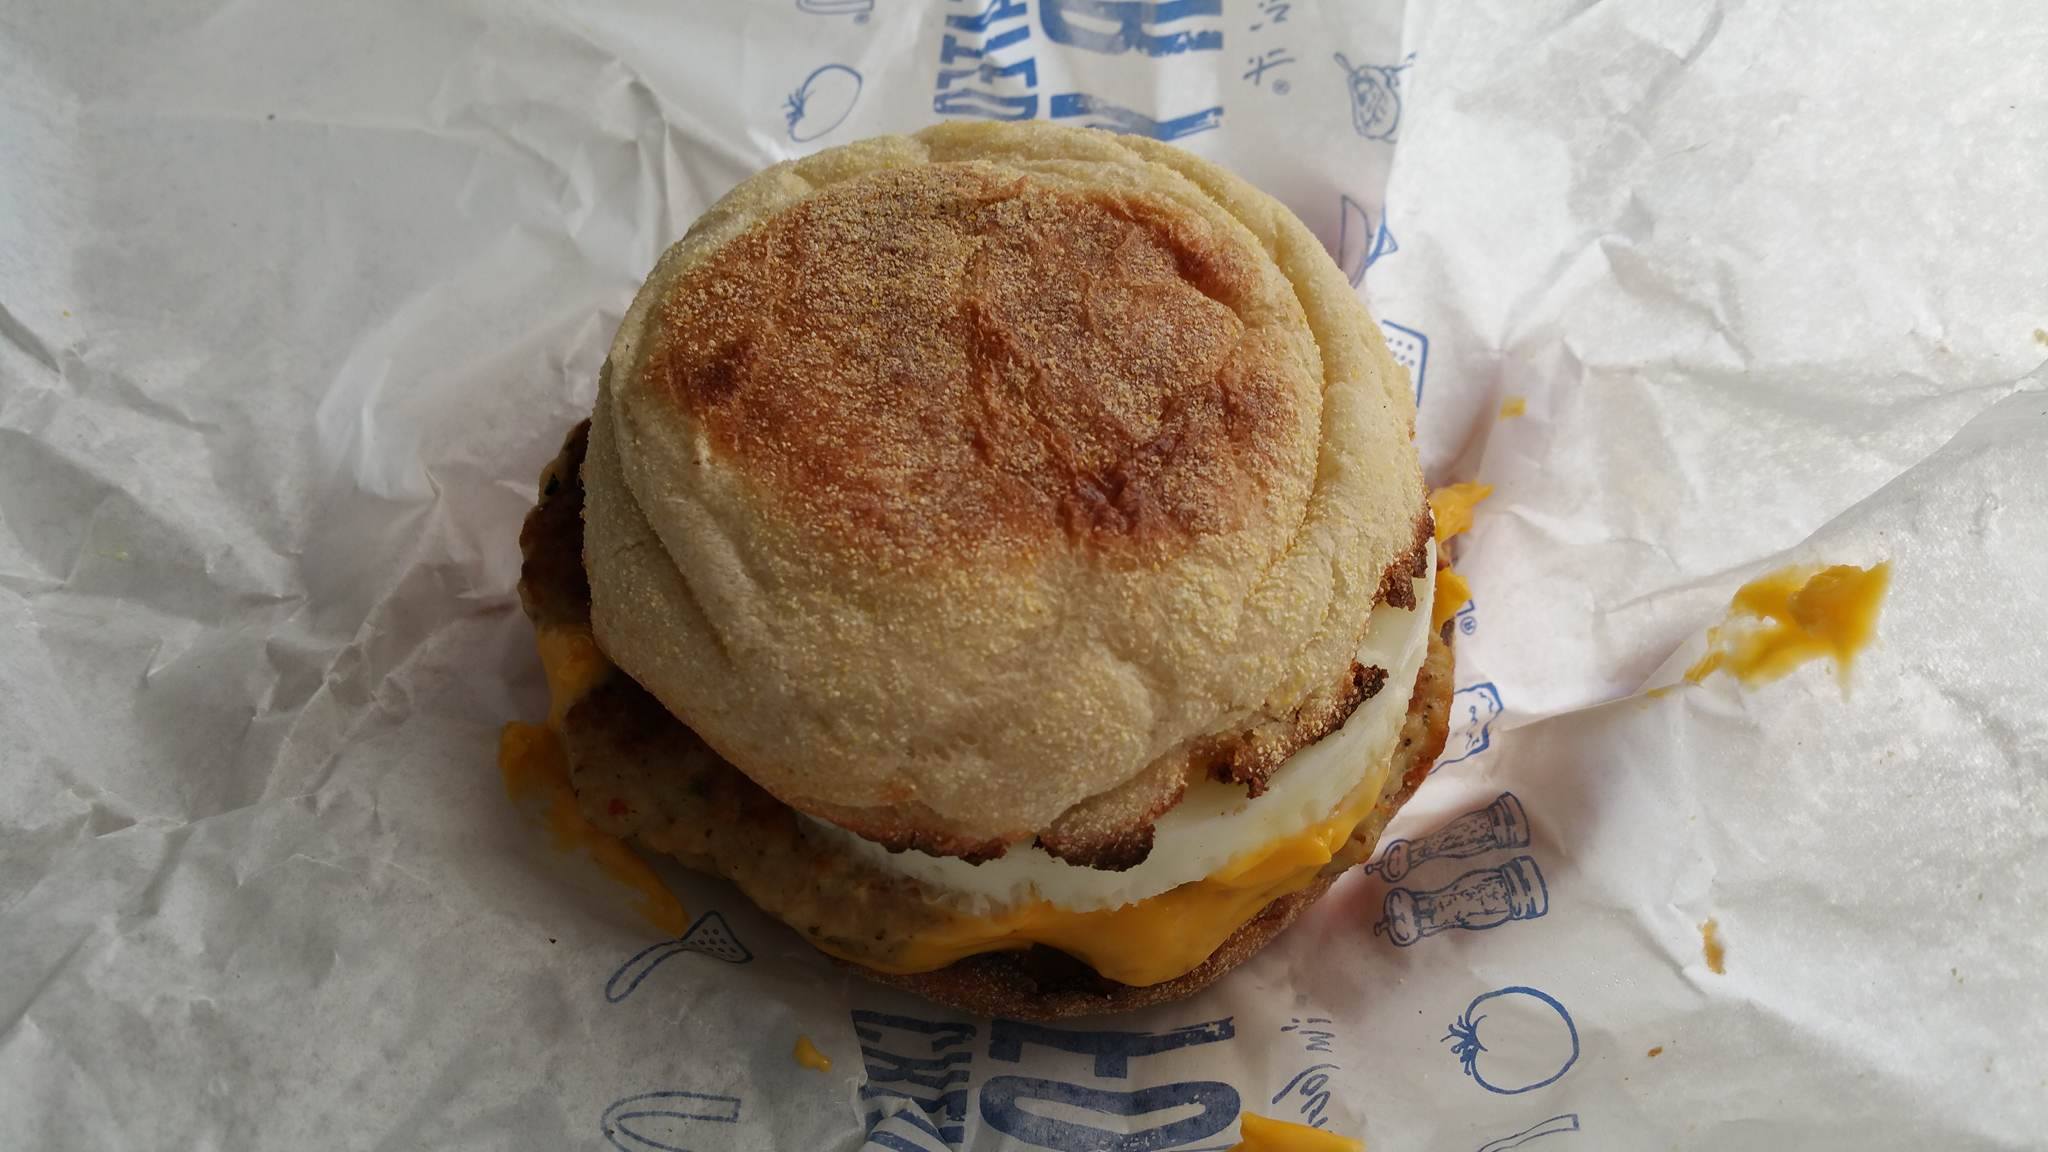 The McDonald's Breakfast Giveaway. Saratoga Food Fanatic